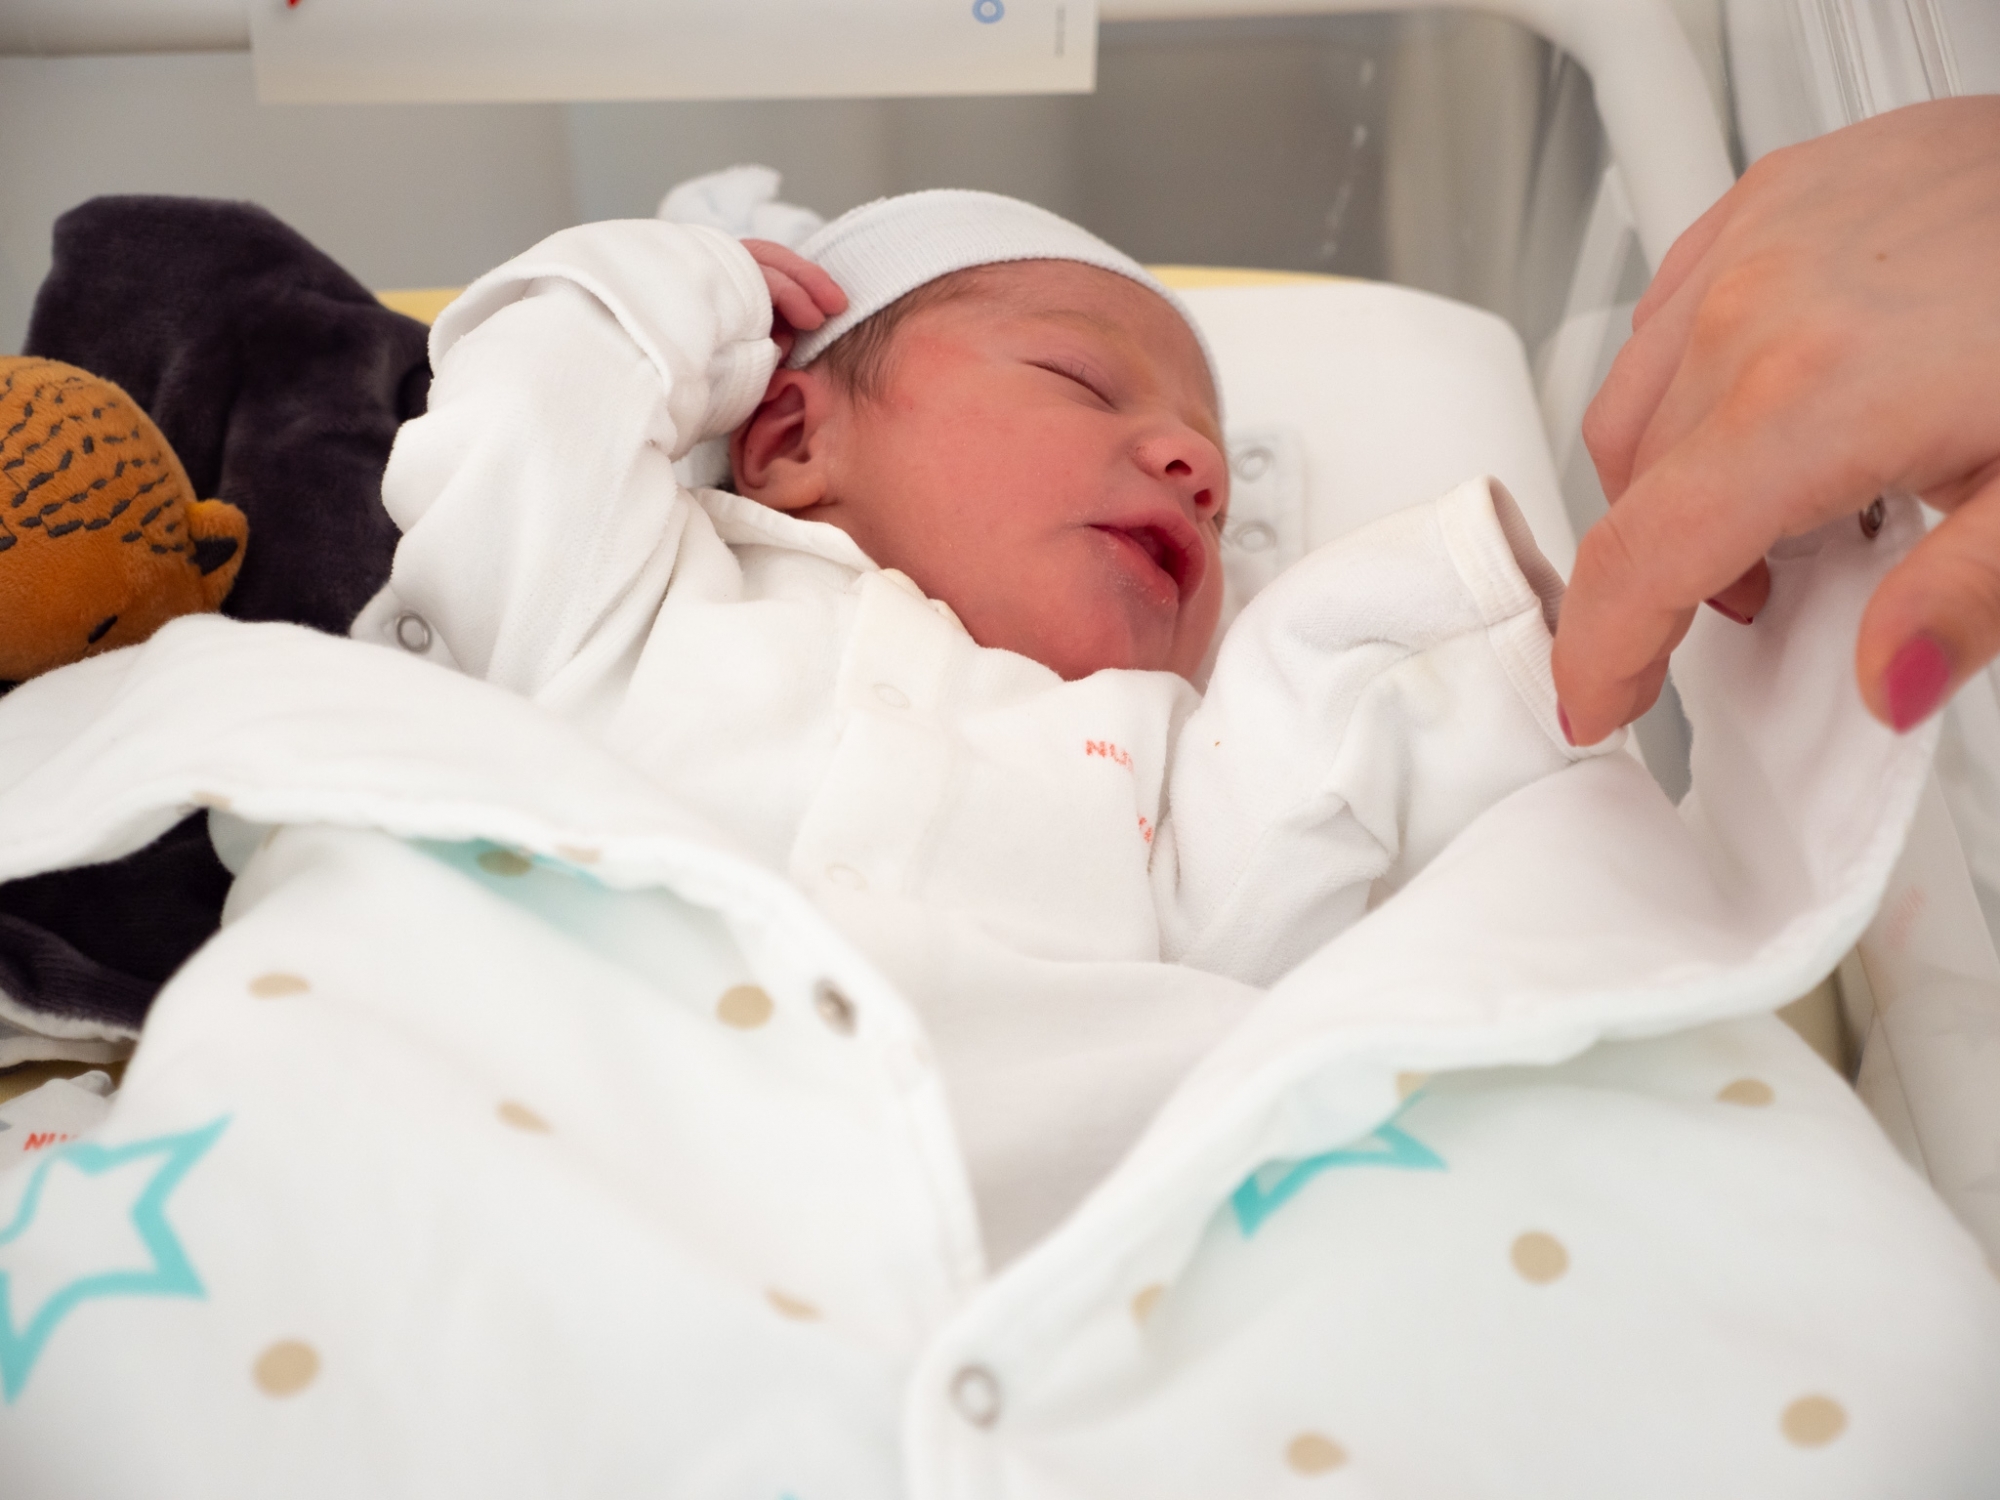 Daegan Vouilloz est le premier bébé né en Valais en 2021.